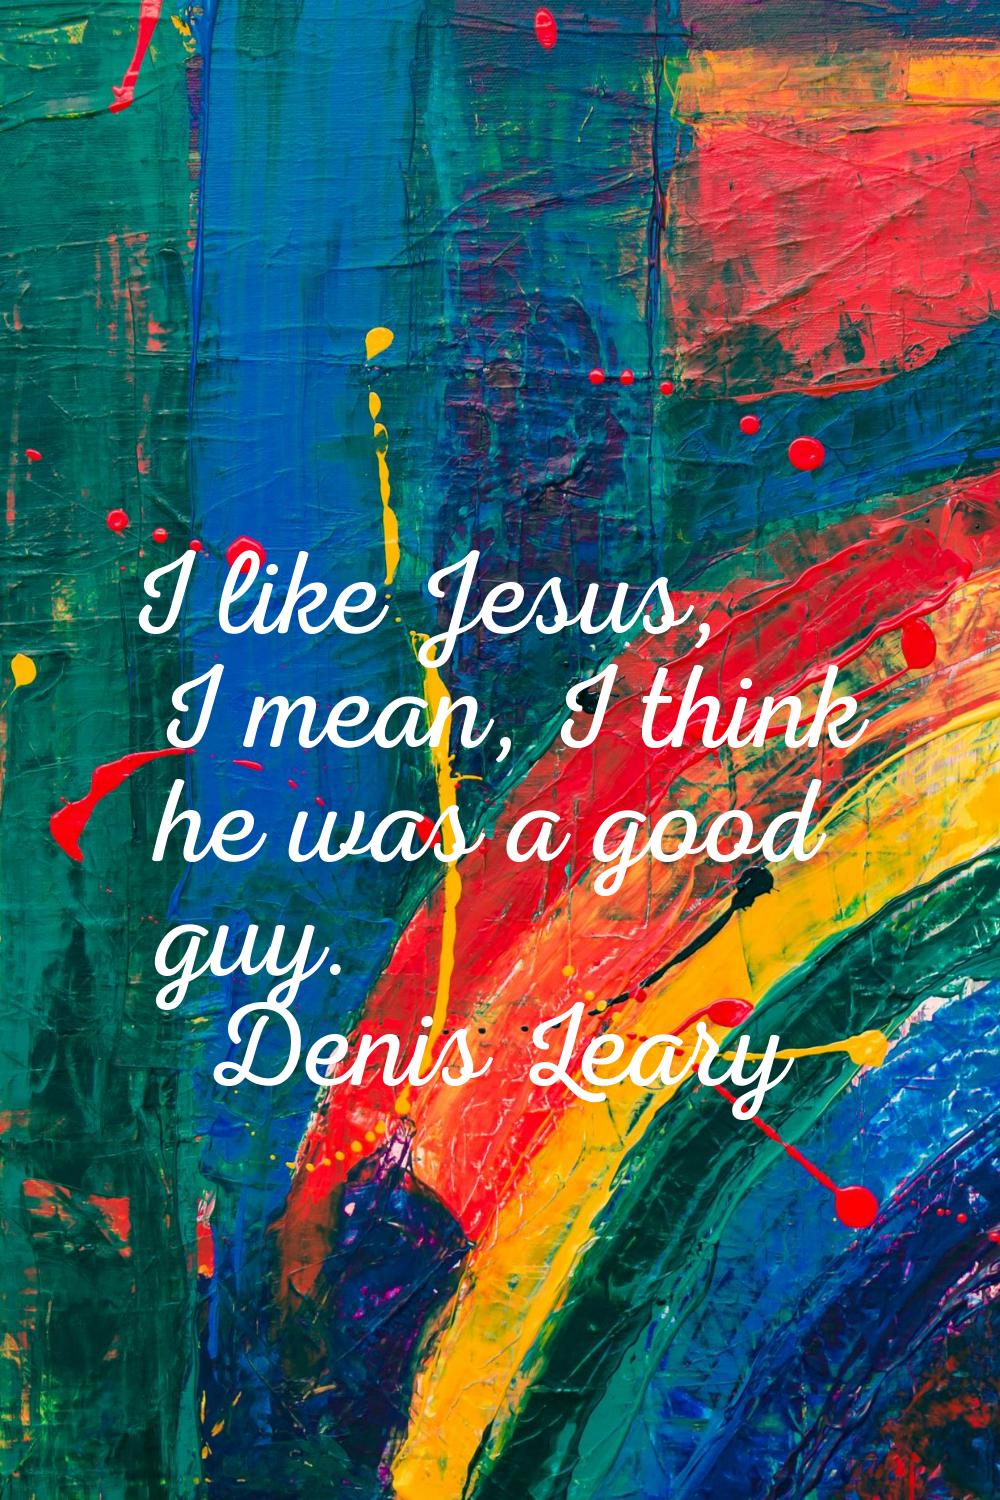 I like Jesus, I mean, I think he was a good guy.